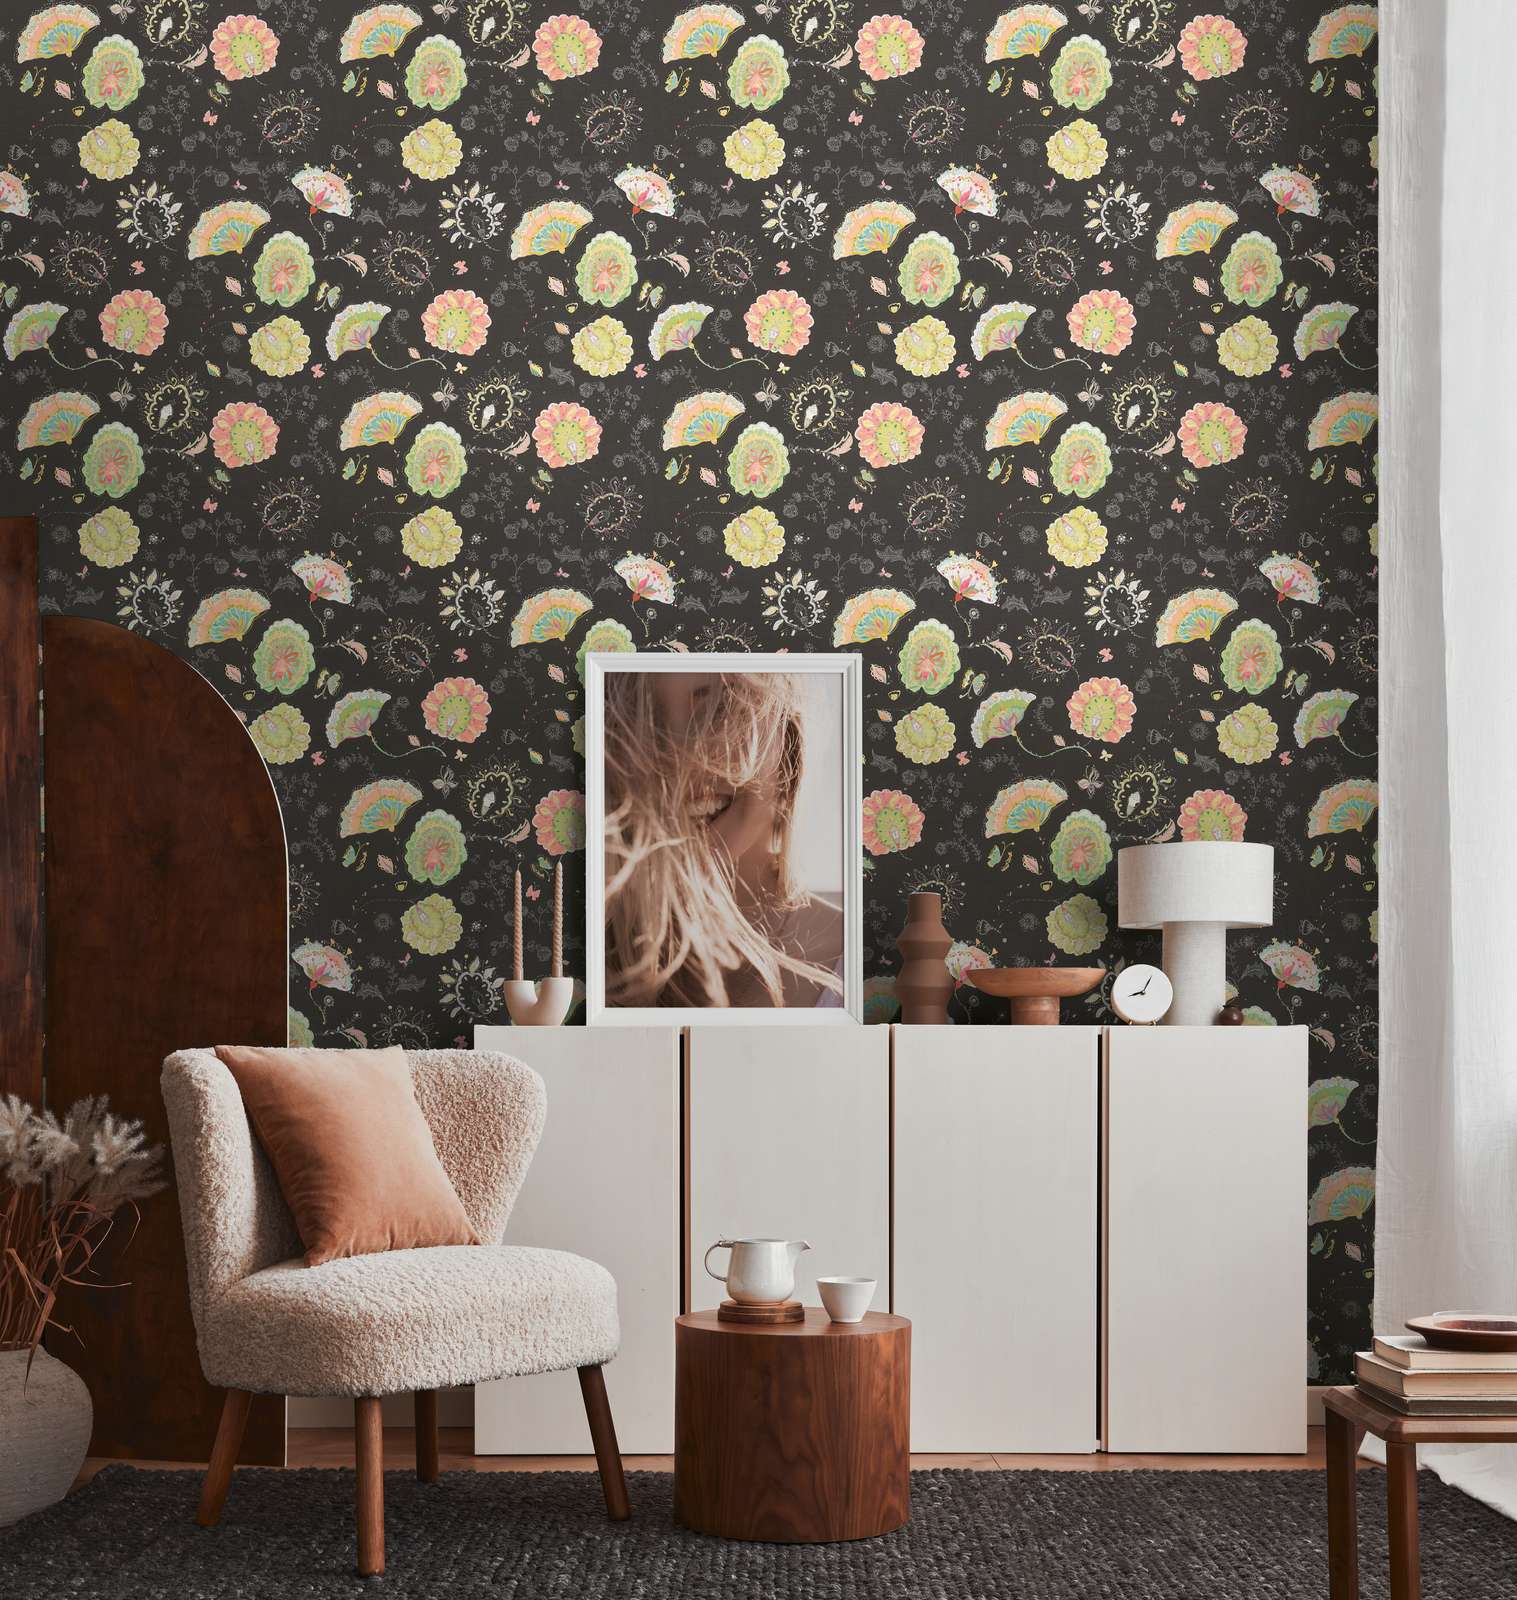             Vliestapete mit floralem Muster und leichter Glanzstruktur – Schwarz, Grün, Bunt
        